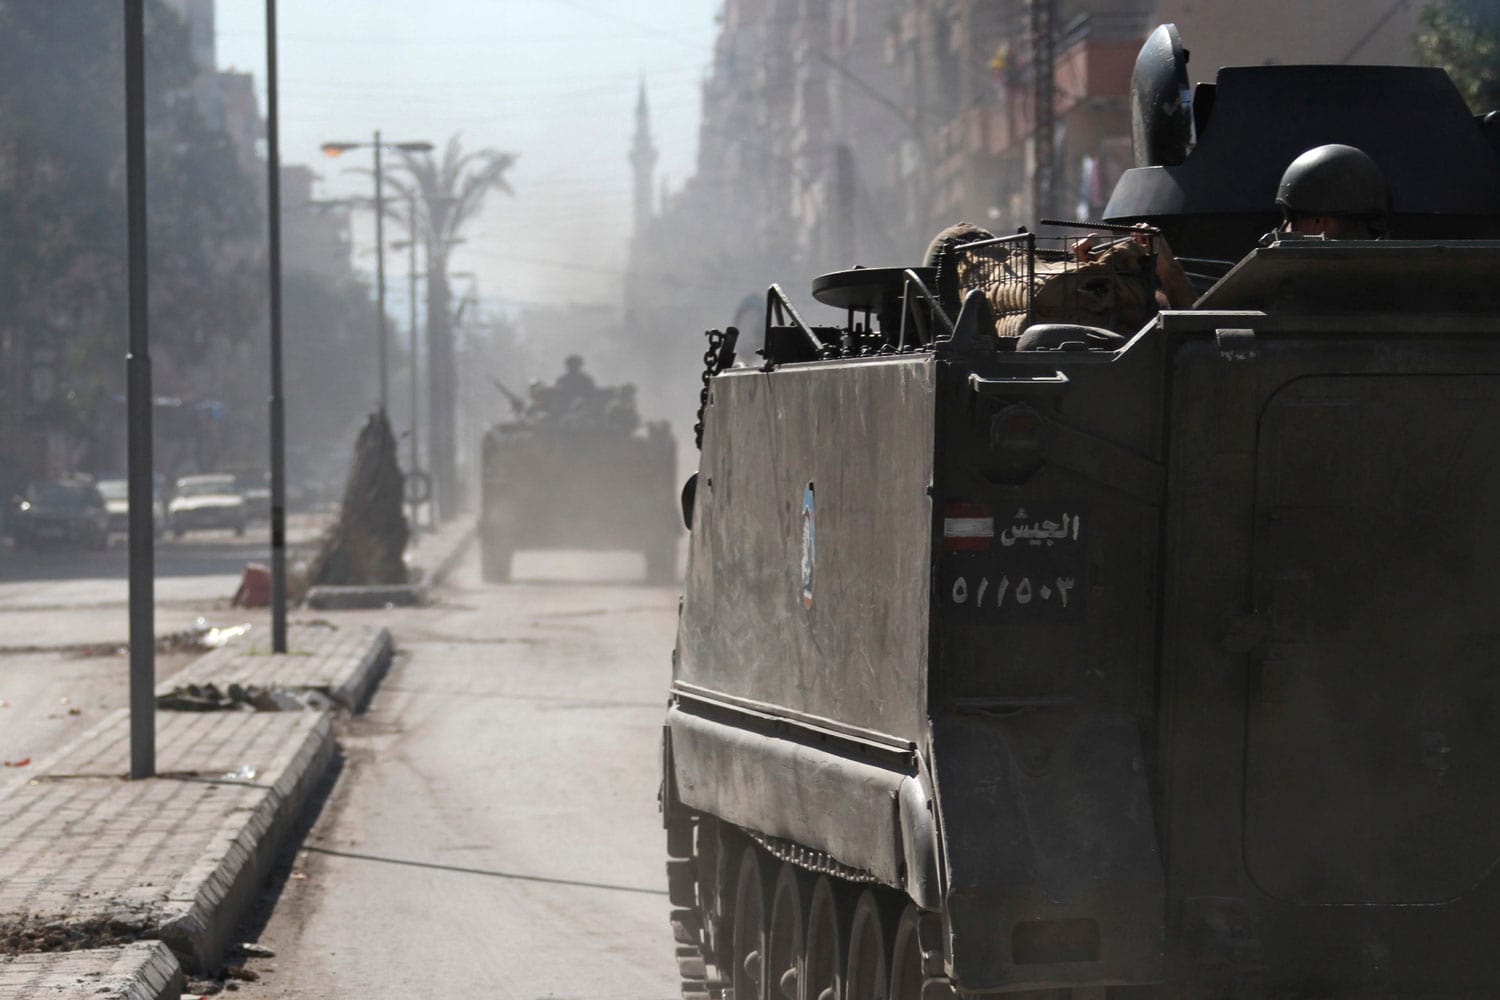 El ejército de Libia se despliega para frenar los enfrentamientos ligados al conflicto de Siria